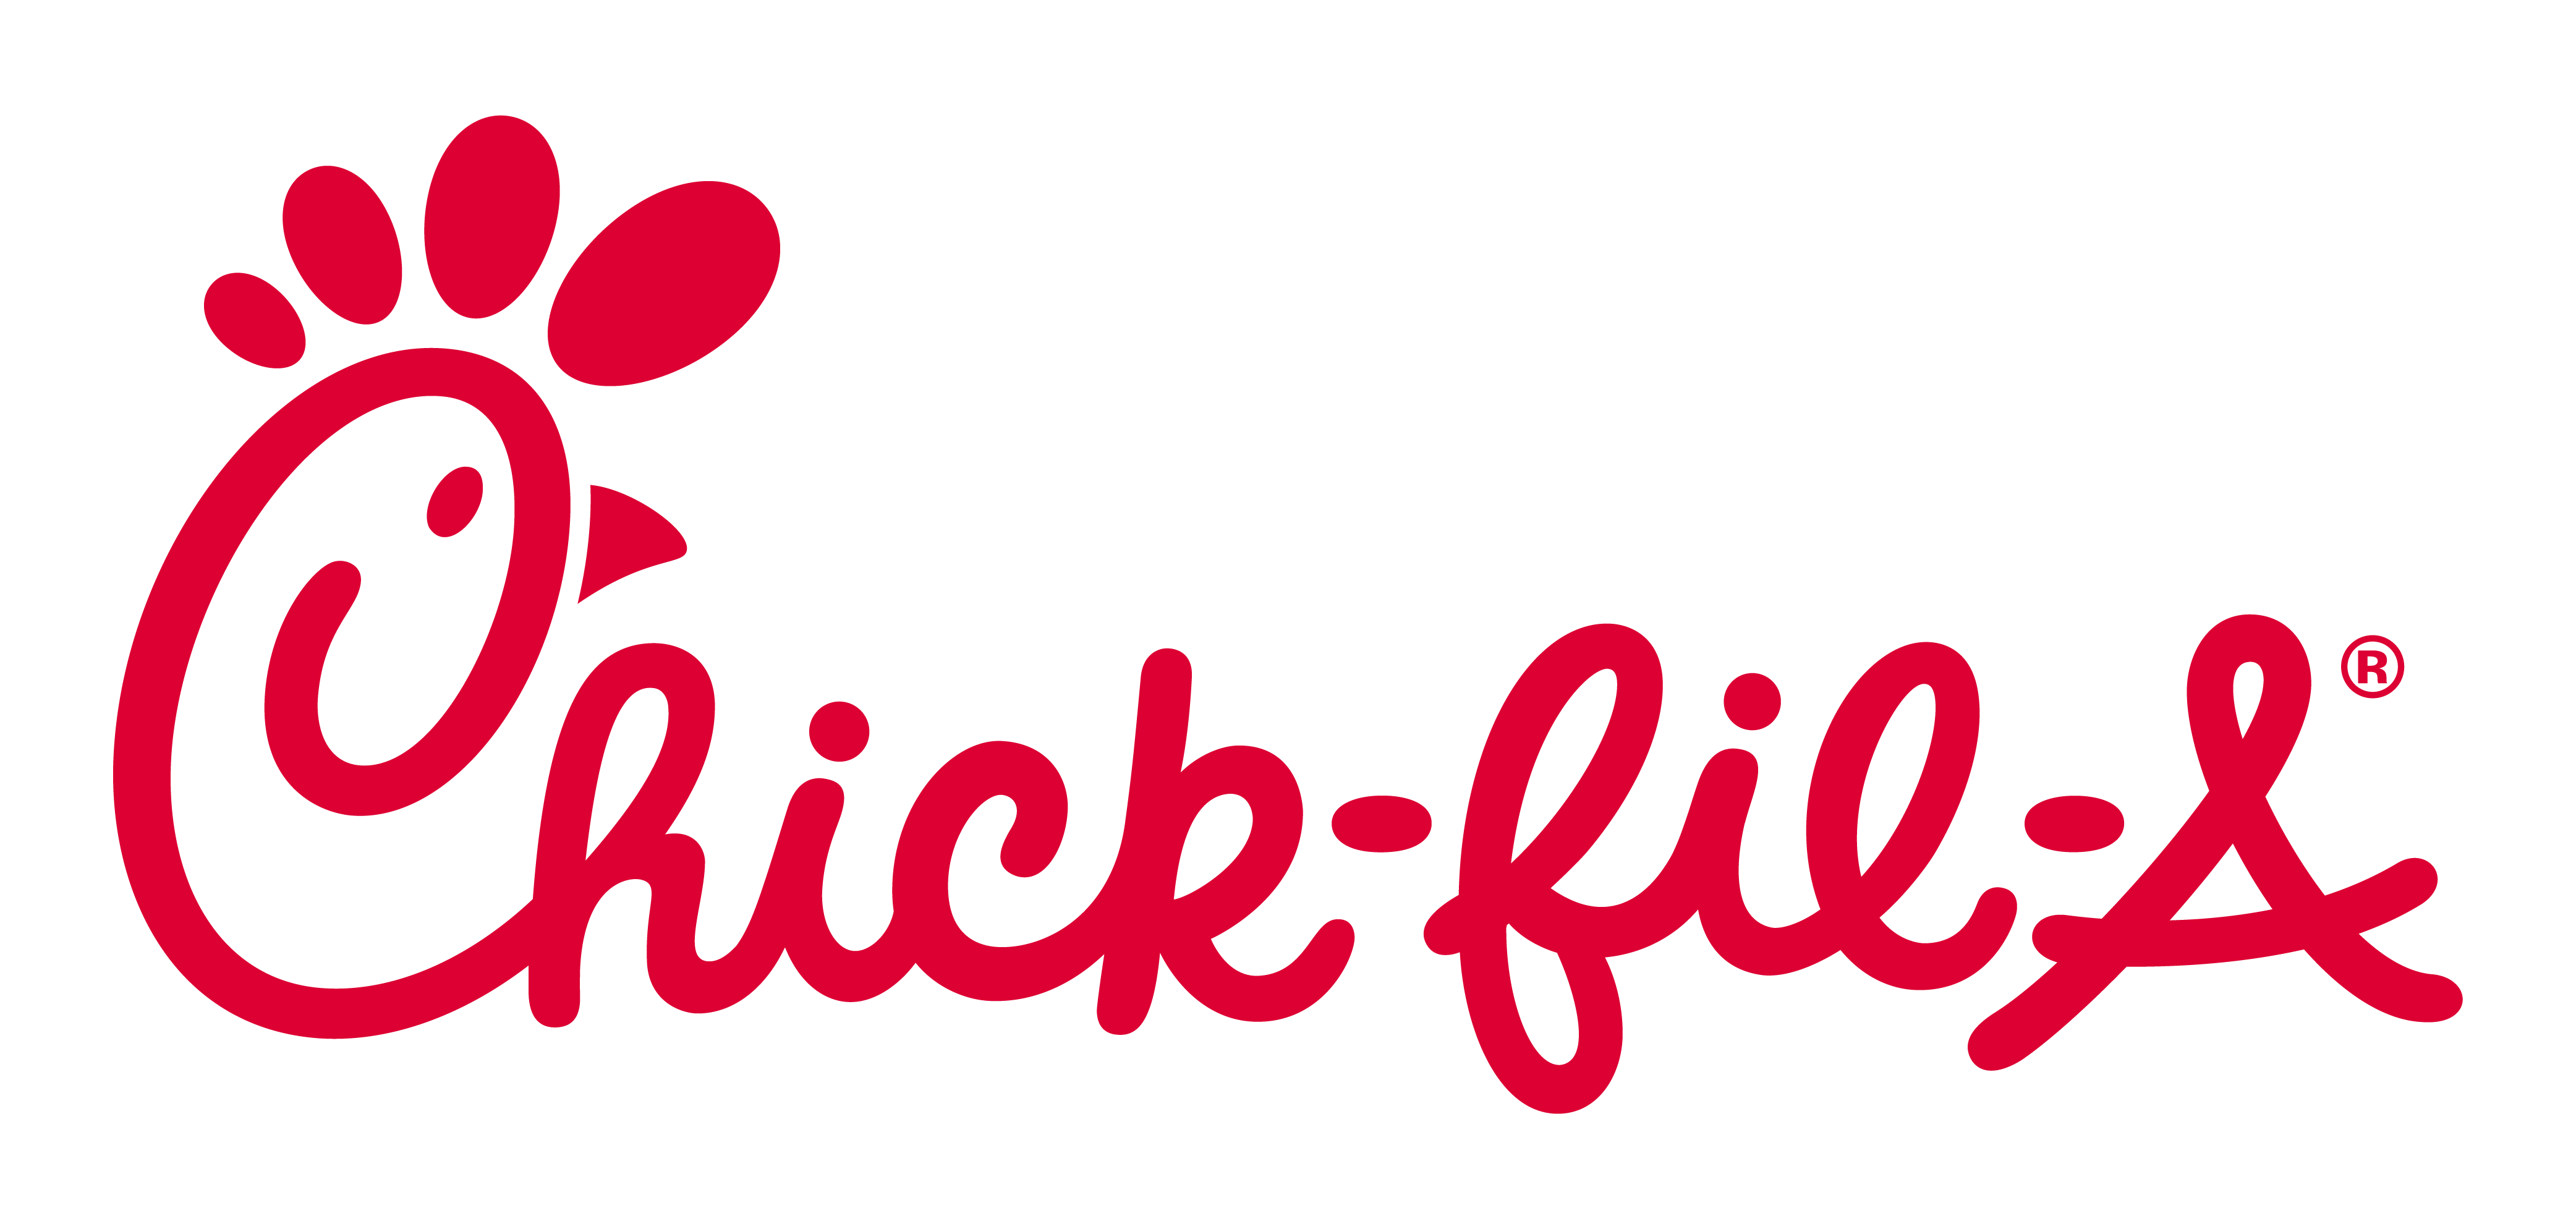 Event Sponsor - Chick-Fil-A (logo)